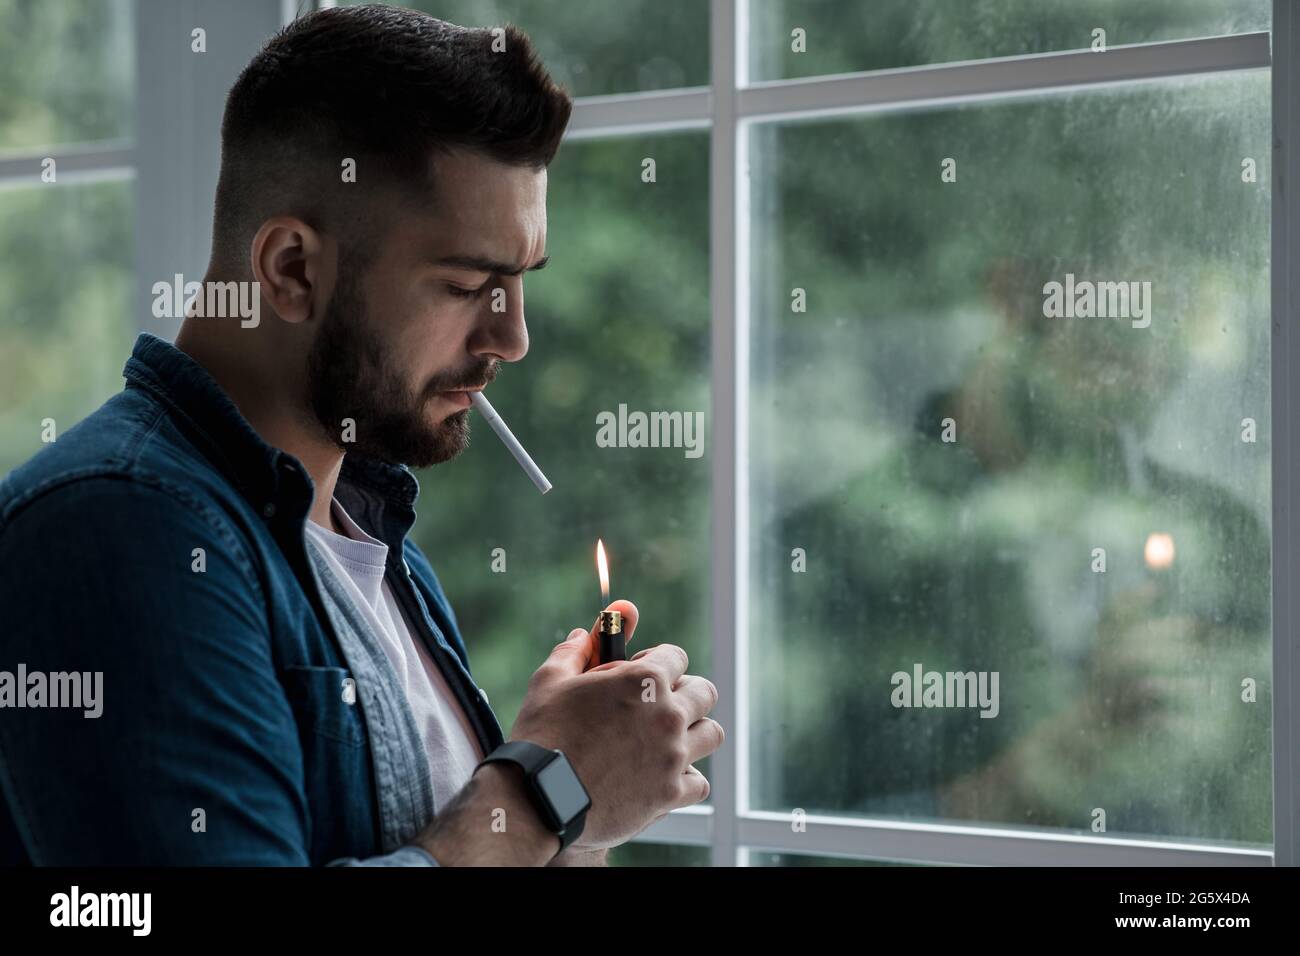 Style de vie urbain, portrait émotionnel d'un jeune homme beau triste et déprimé, fumer Banque D'Images